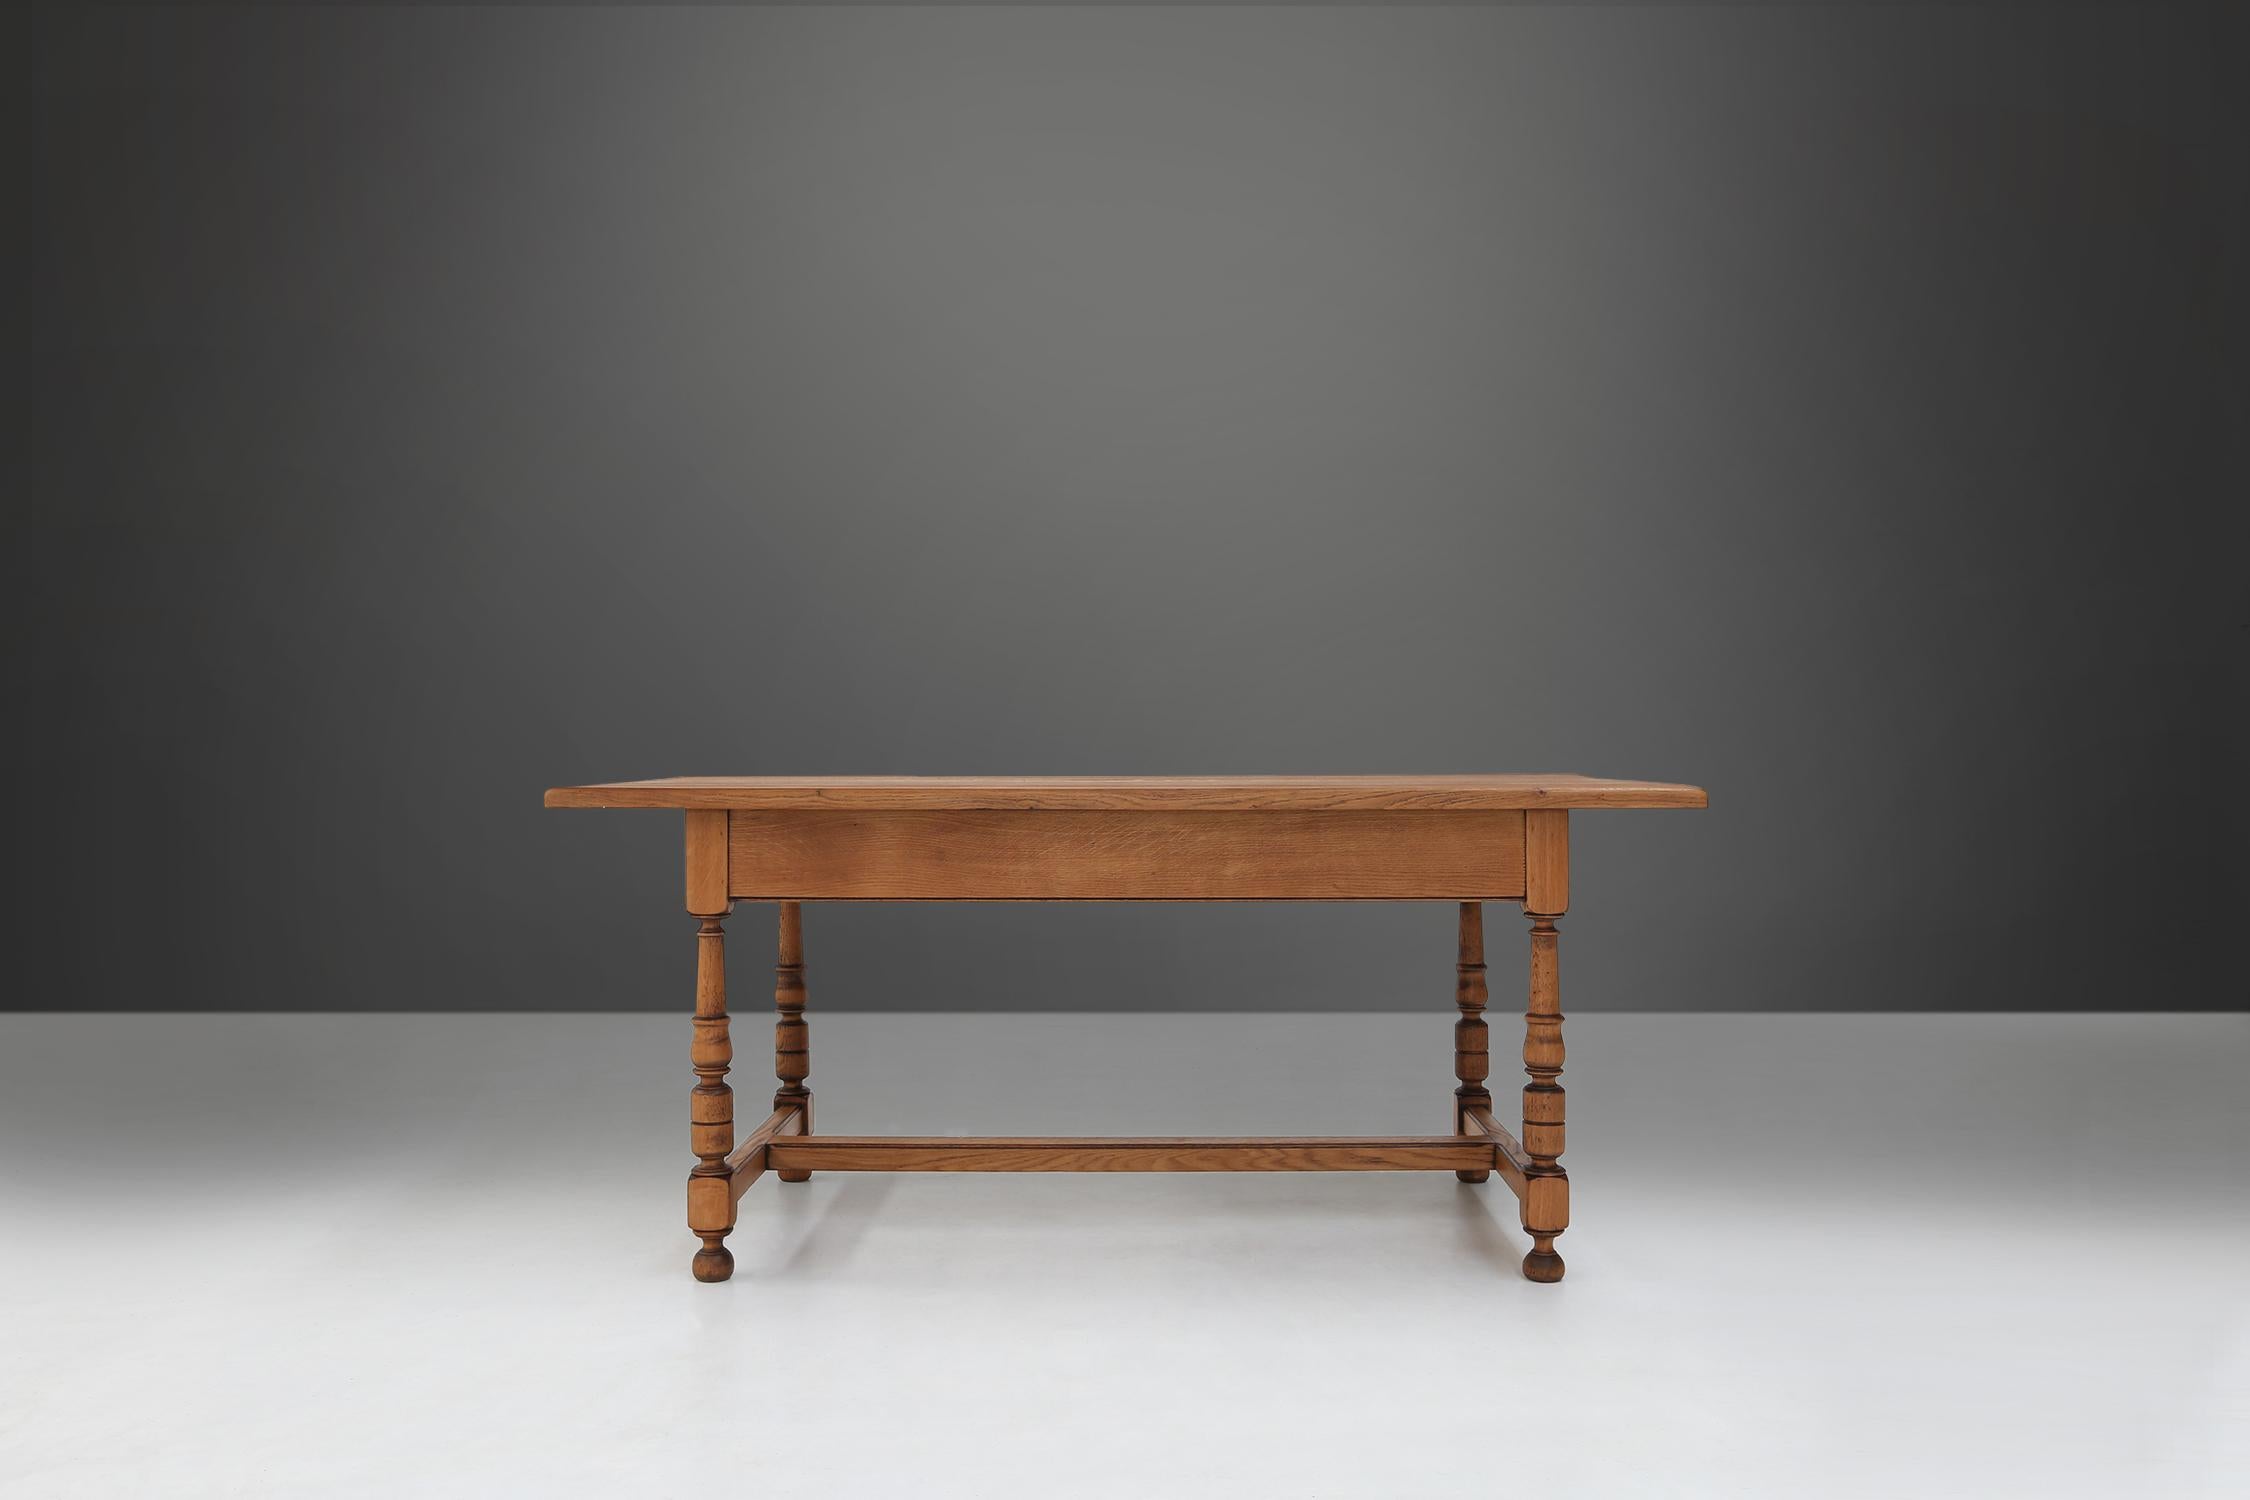 Dieser Tisch aus dem 20. Jahrhundert ist aus hochwertigem Eichenholz gefertigt und hellbraun lackiert. Die Beine sind gedreht und haben eine kugelförmige Form, die dem Tisch ein elegantes und klassisches Aussehen verleiht.

Die Eiche hat einen